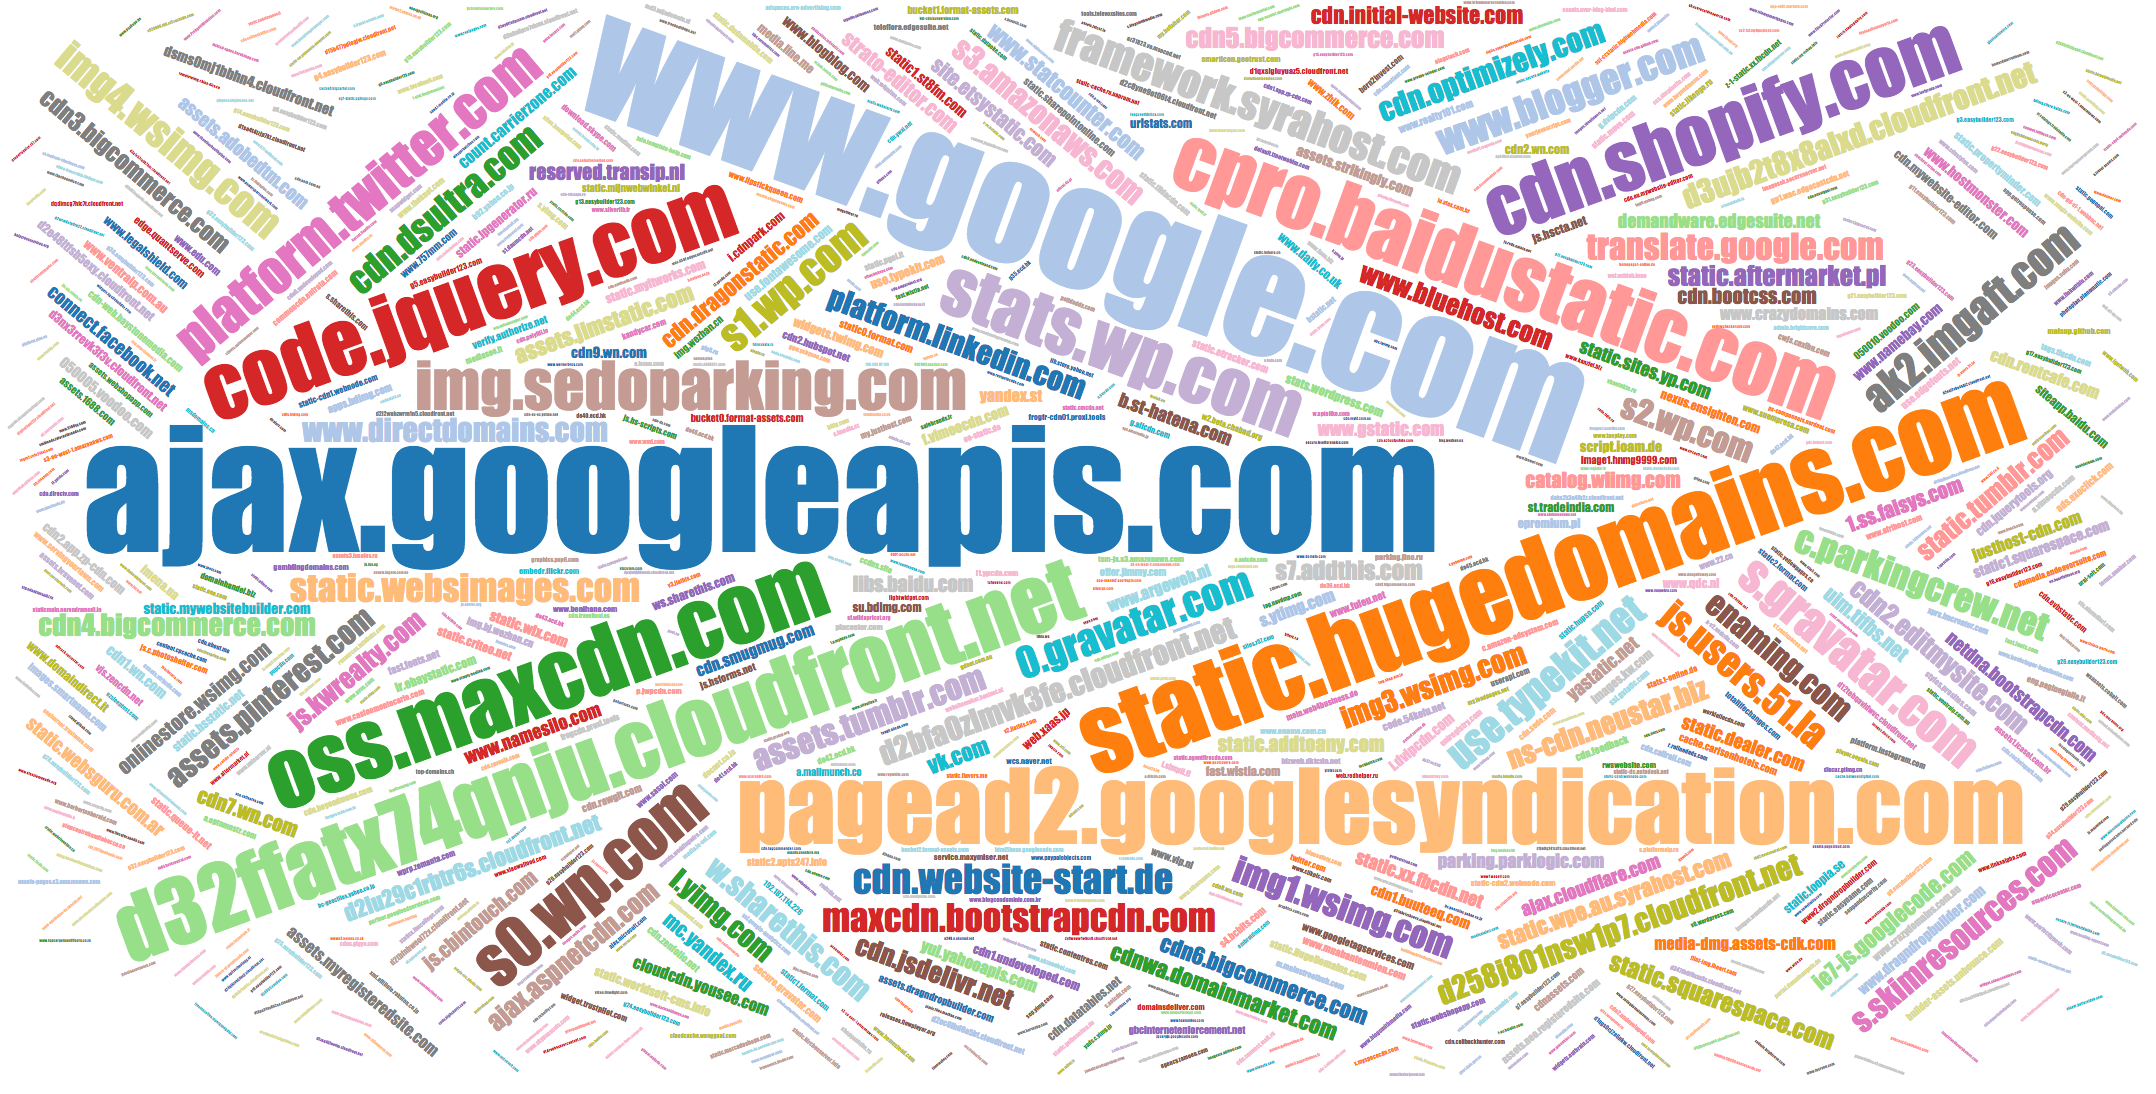 Popular names of JS domains vk.com, v3.jiathis.com, etc.